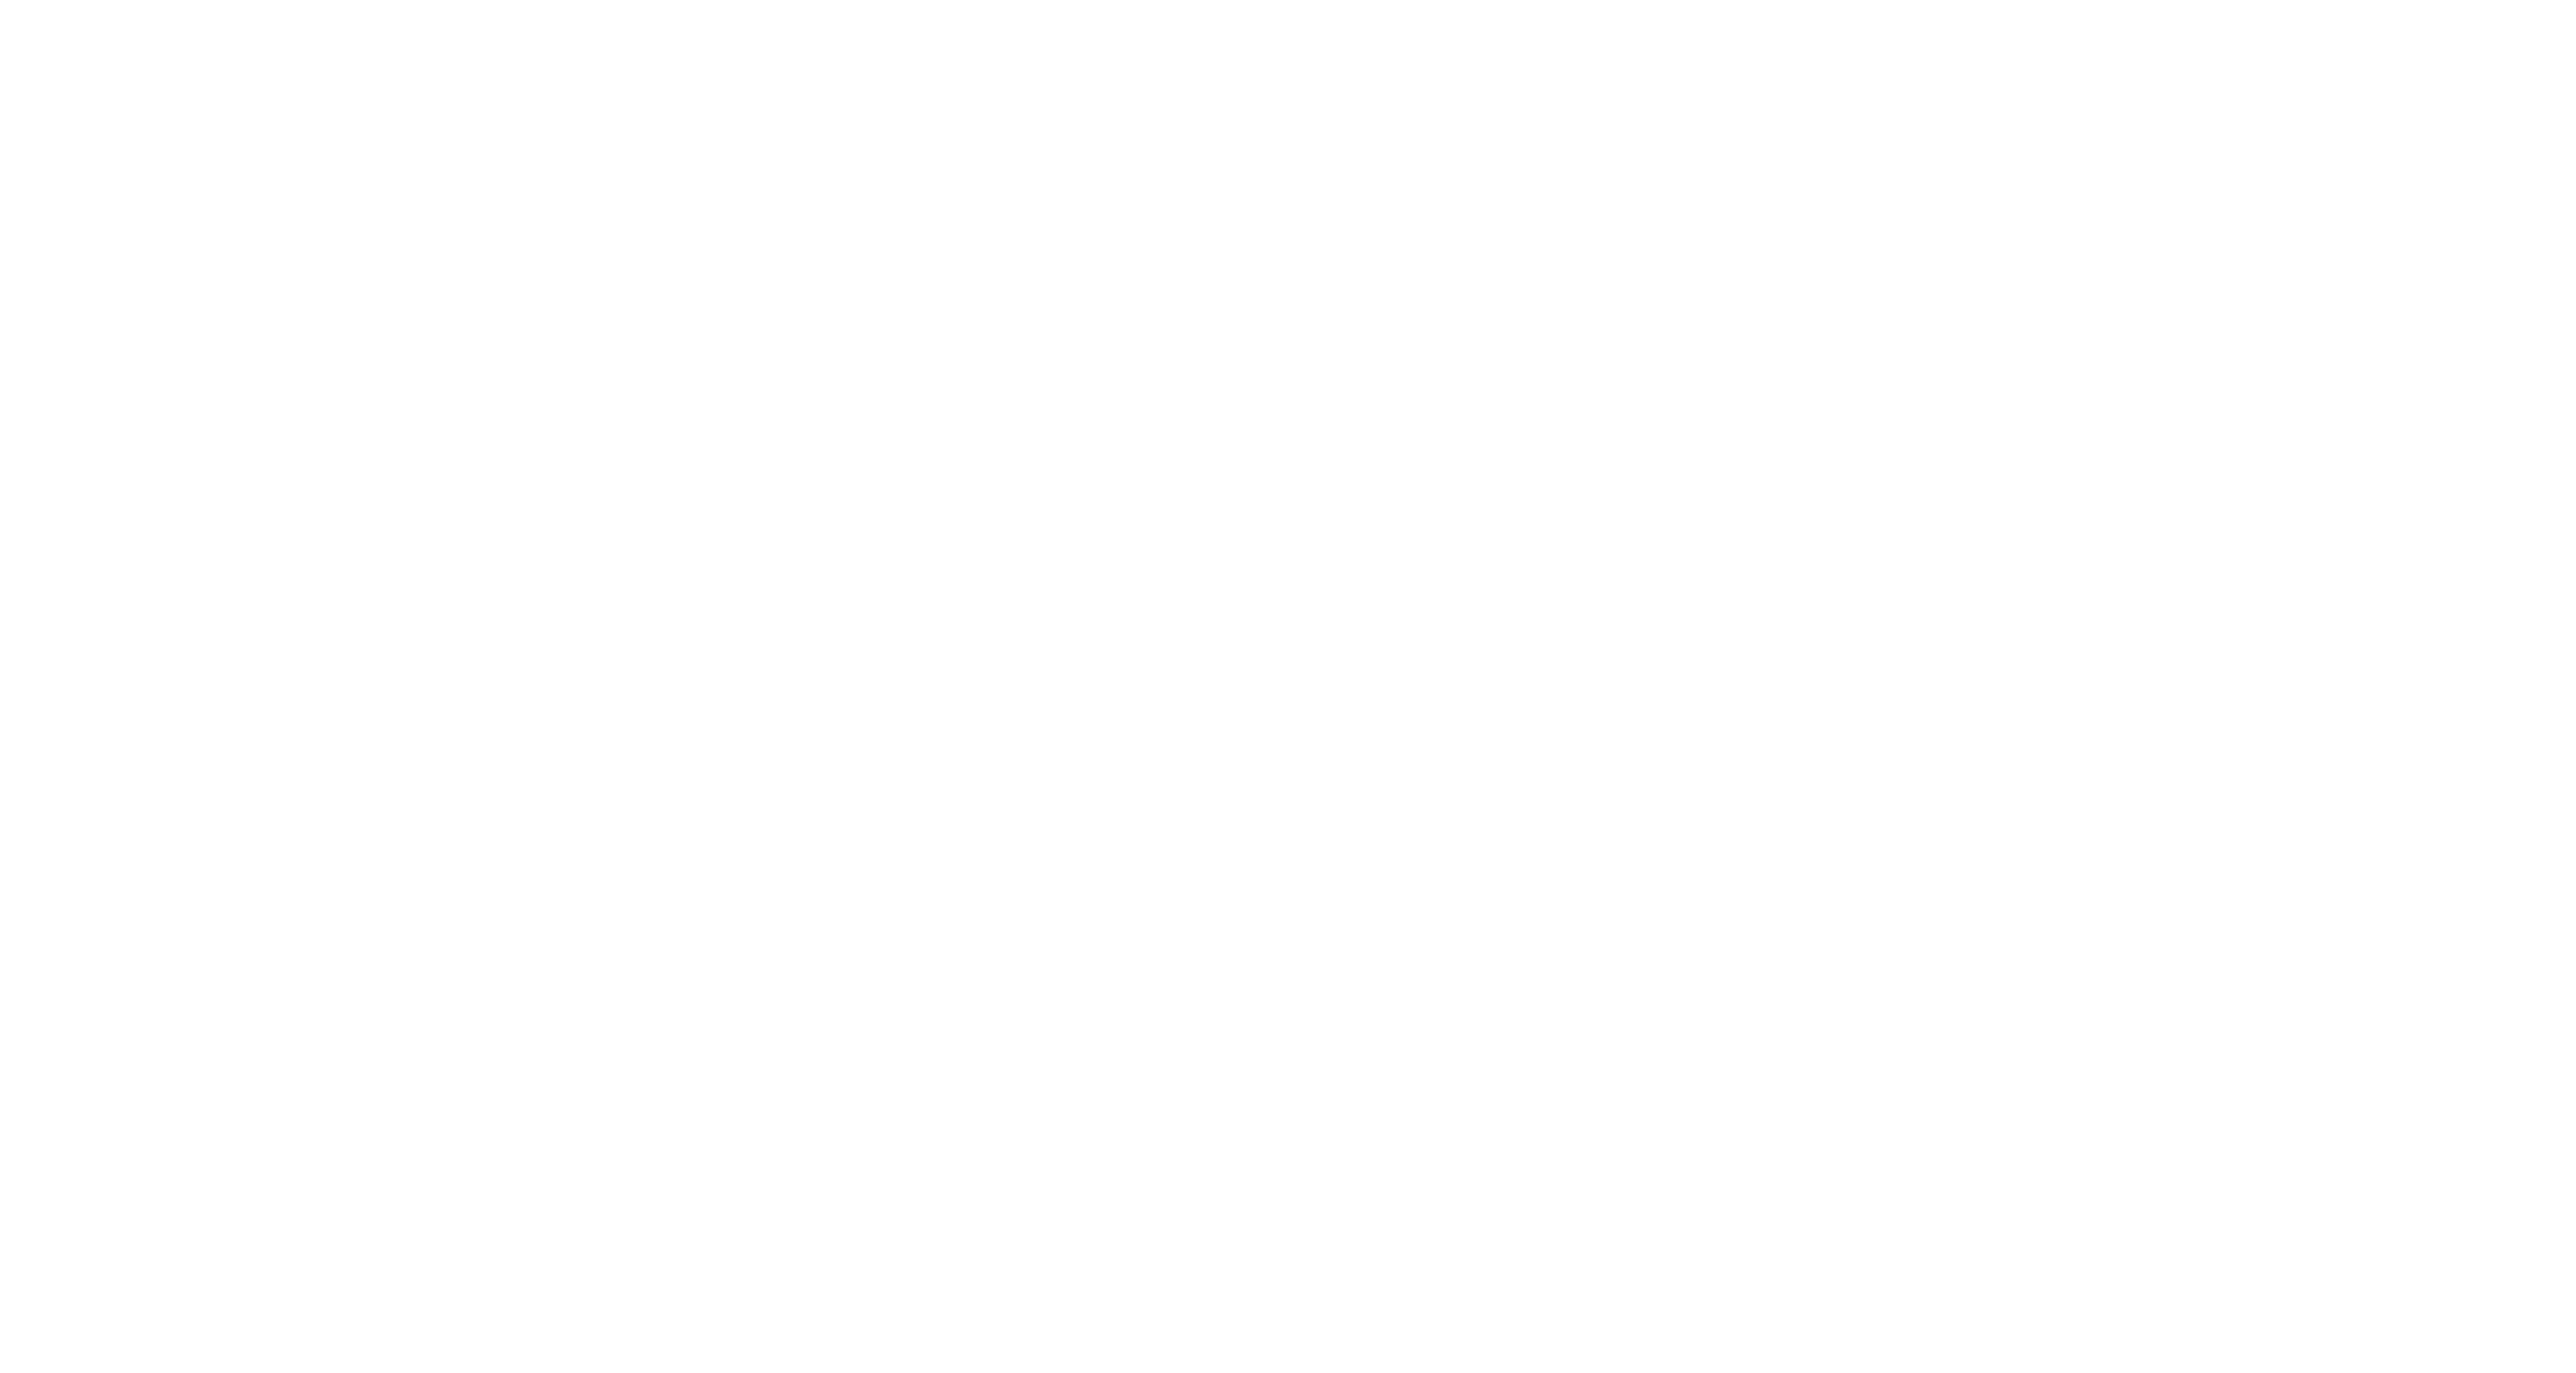 rocket league fan rewards in game